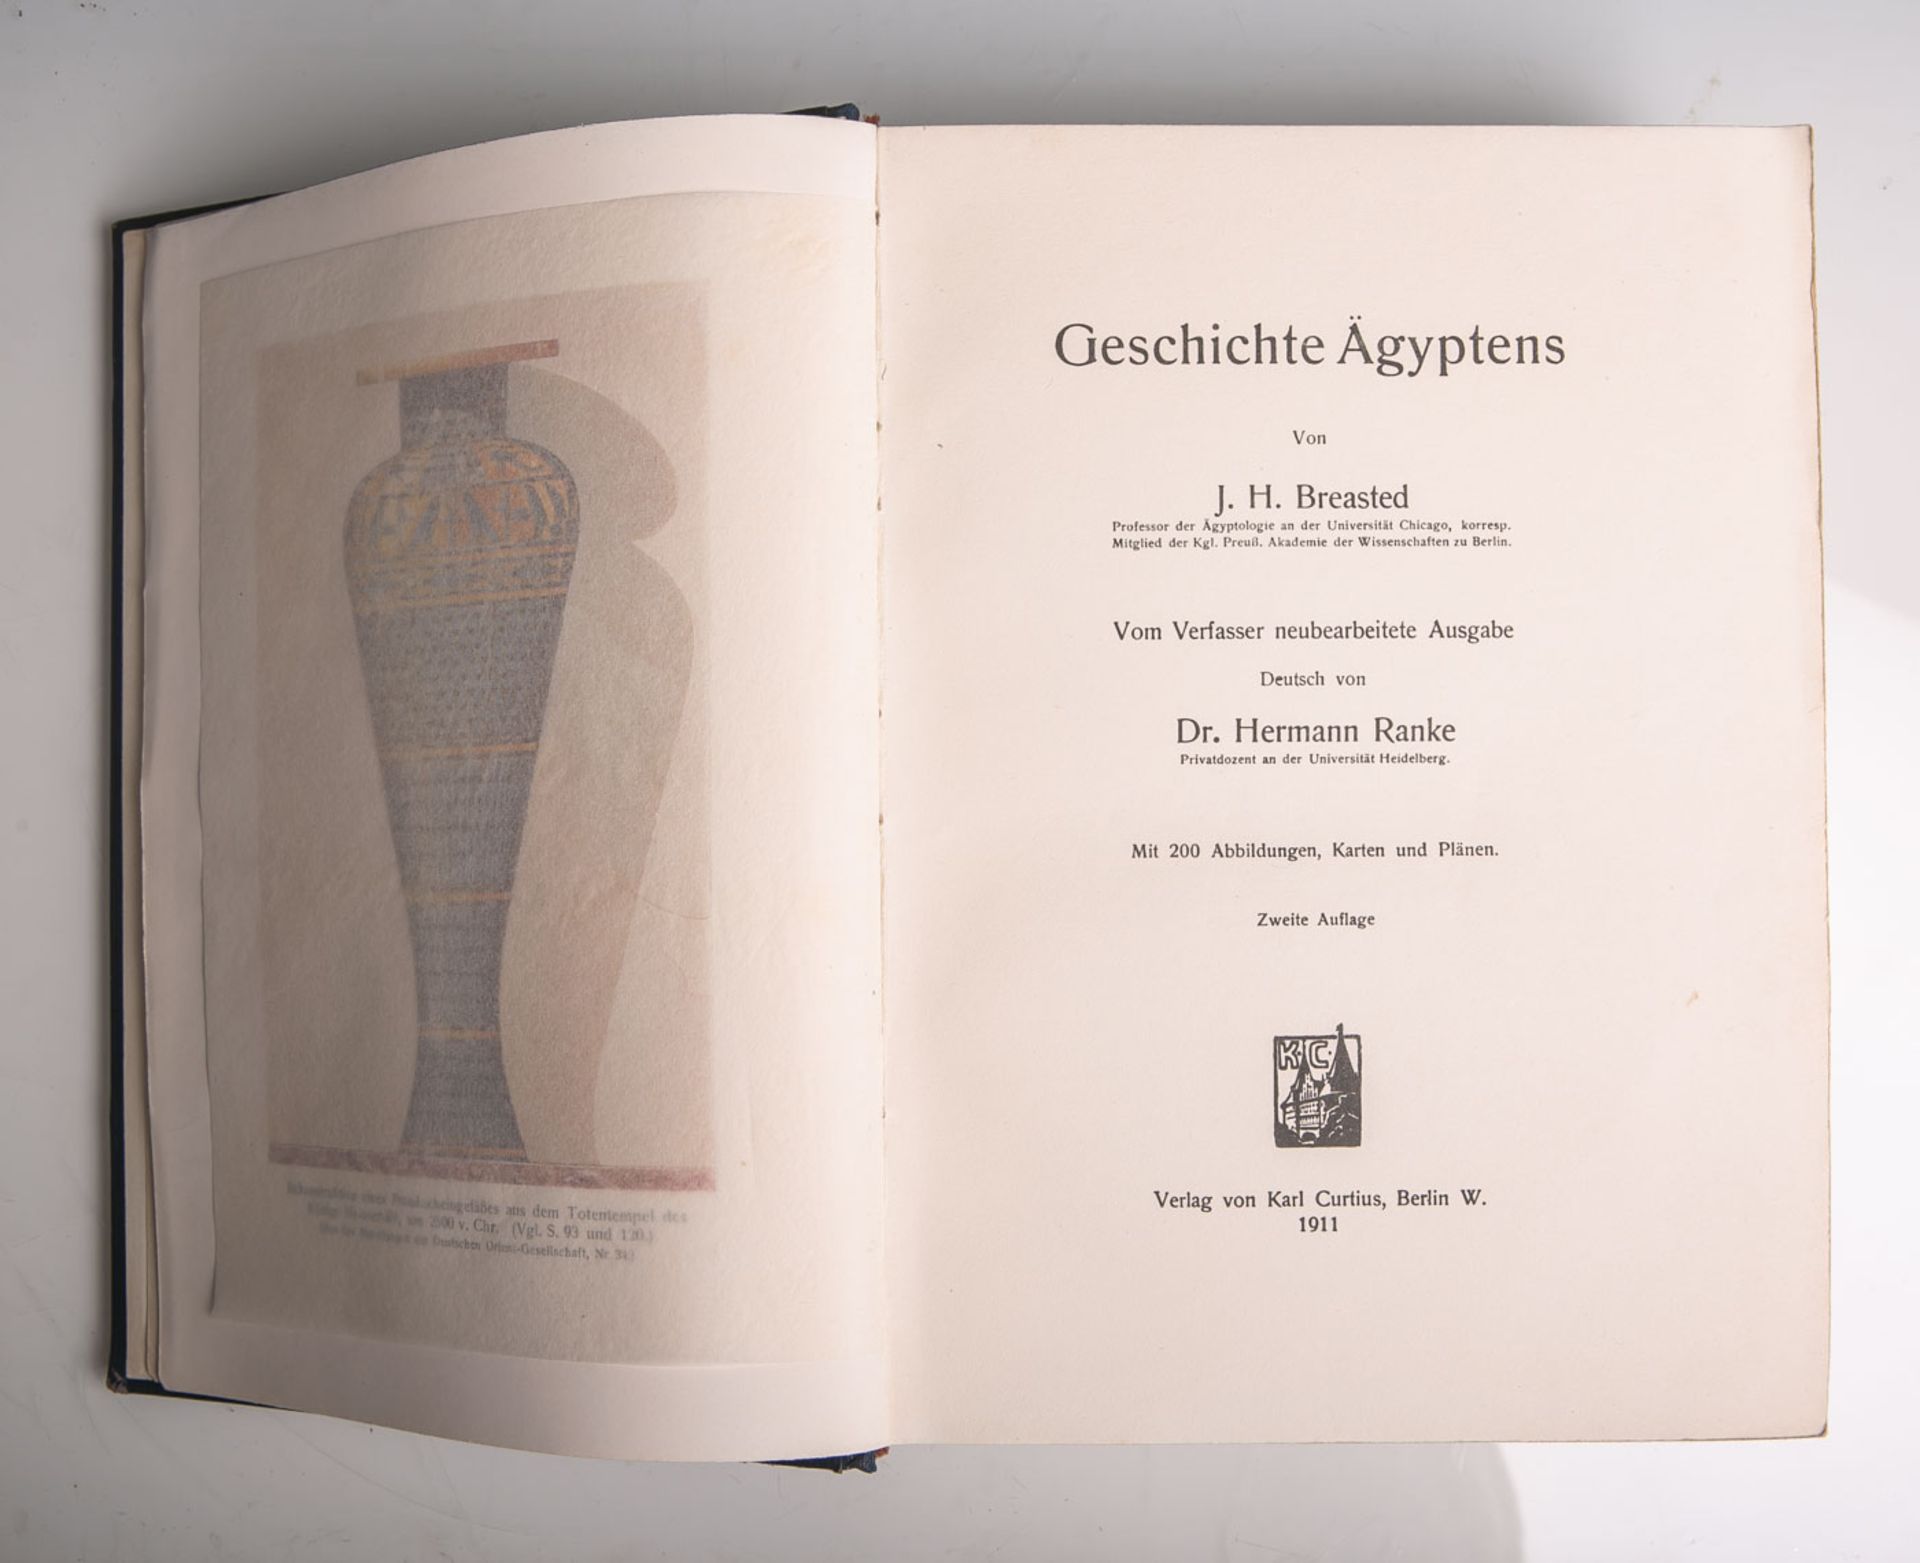 Breasted, J. H., "Geschichte Aegyptens", Verlag von Karl Curtius, Berlin W. 1911, mit